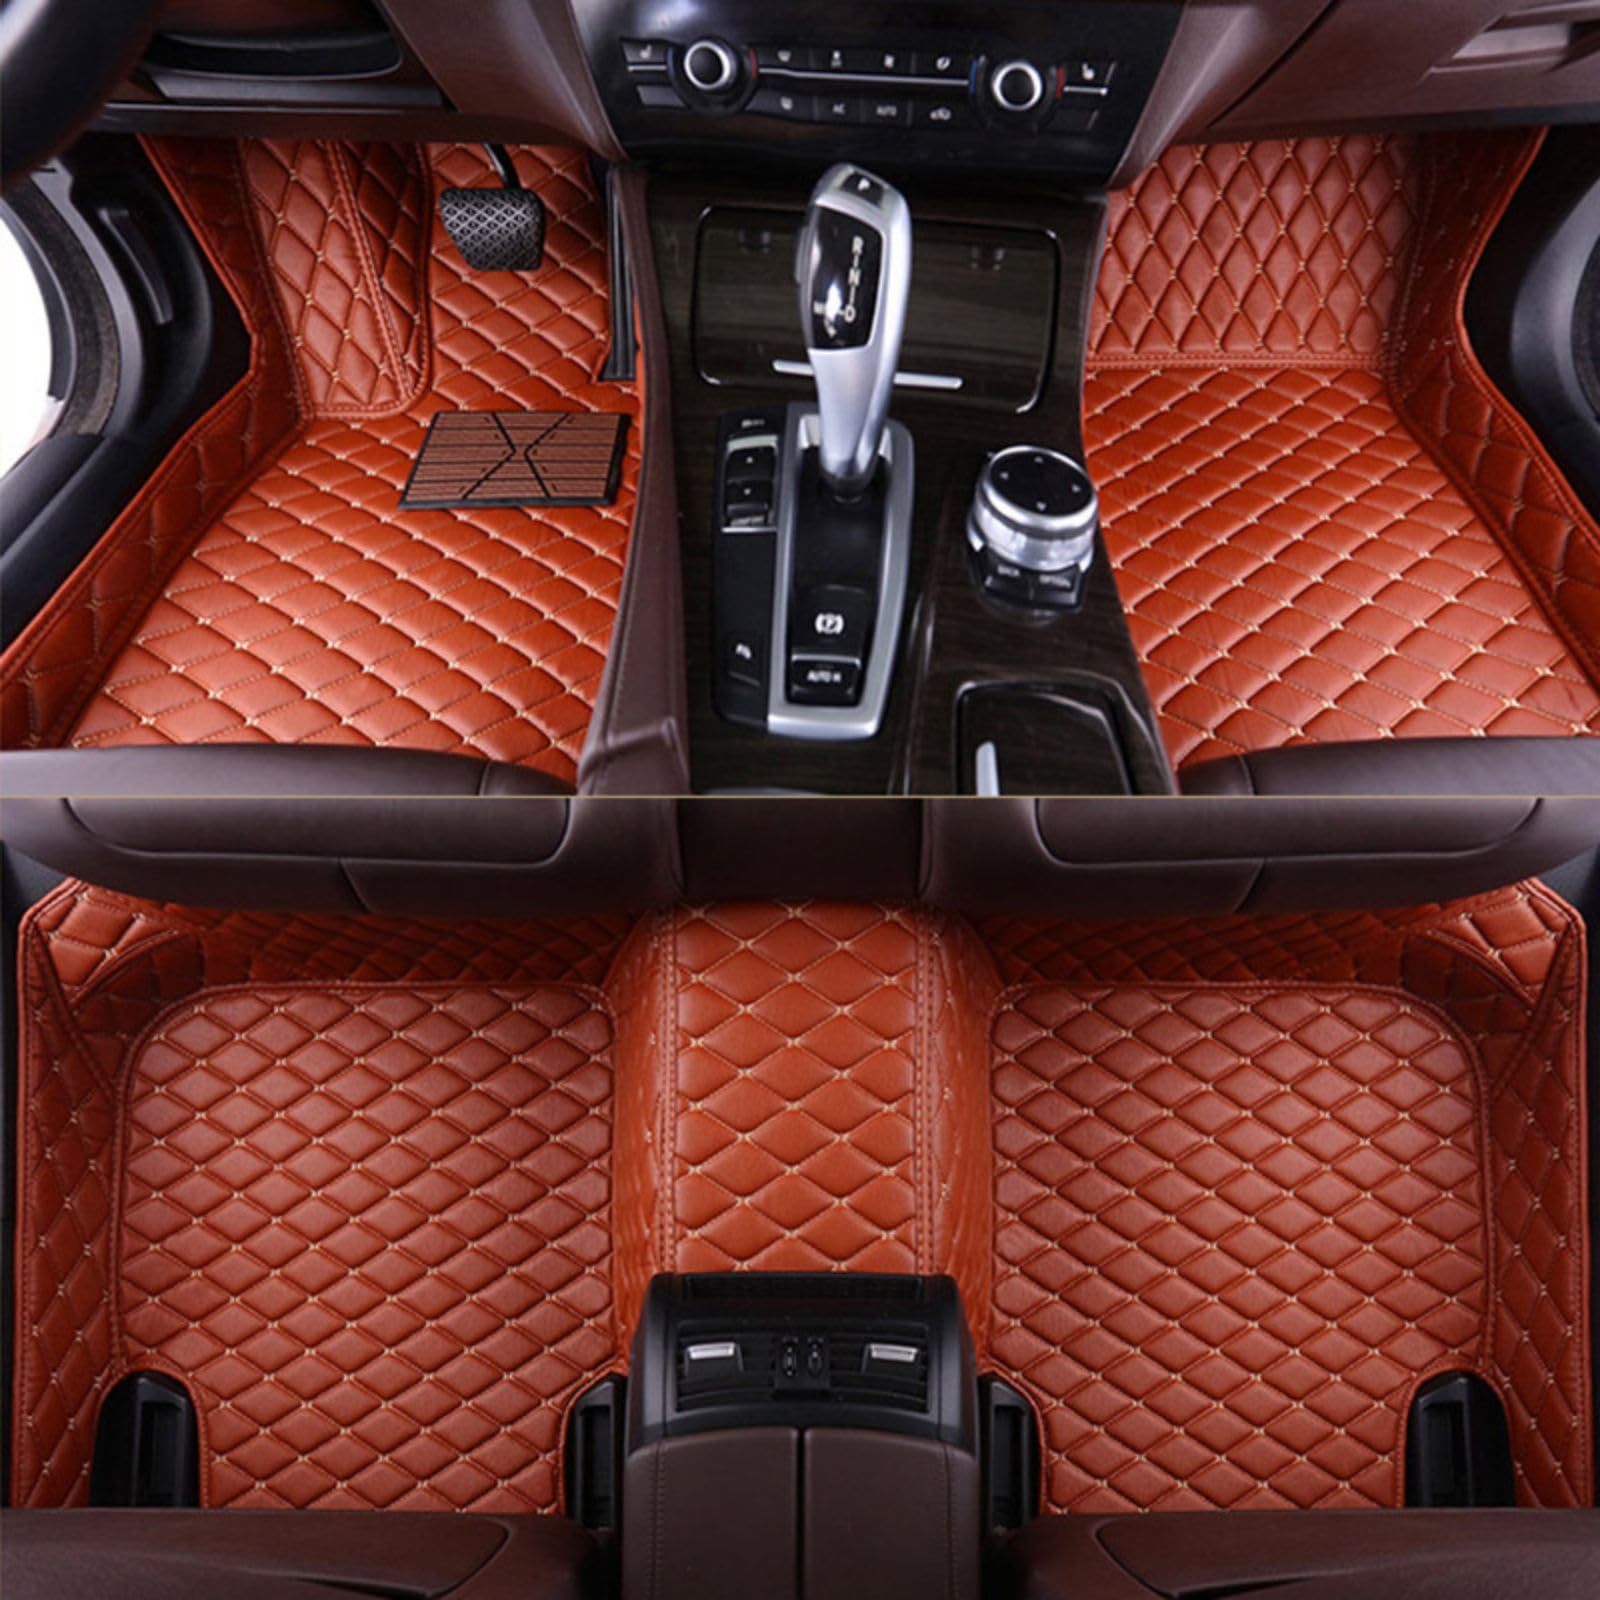 Fussmatten Auto für Audi Q7 (5seats) 2006-2015, PU-Leder Allwetter wasserdichte rutschfeste Interieur-Accessoires,Brown von YPZHGS